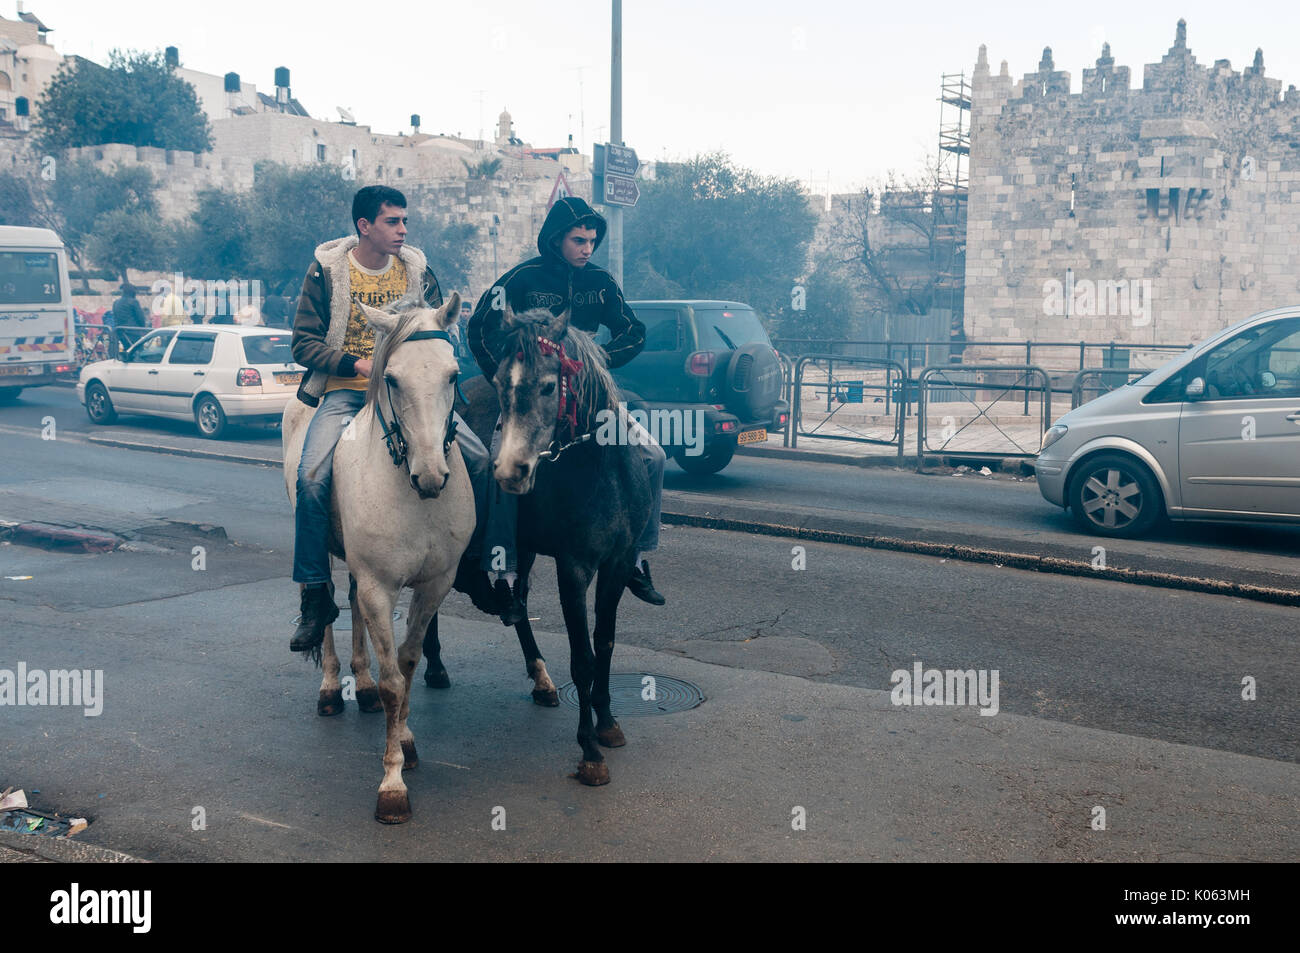 Des jeunes Palestiniens monter à cheval près de la Porte de Damas - l'une des entrées de la vieille ville de Jérusalem, annexée par Israël pendant la Guerre des Six Jours de 1967. Banque D'Images